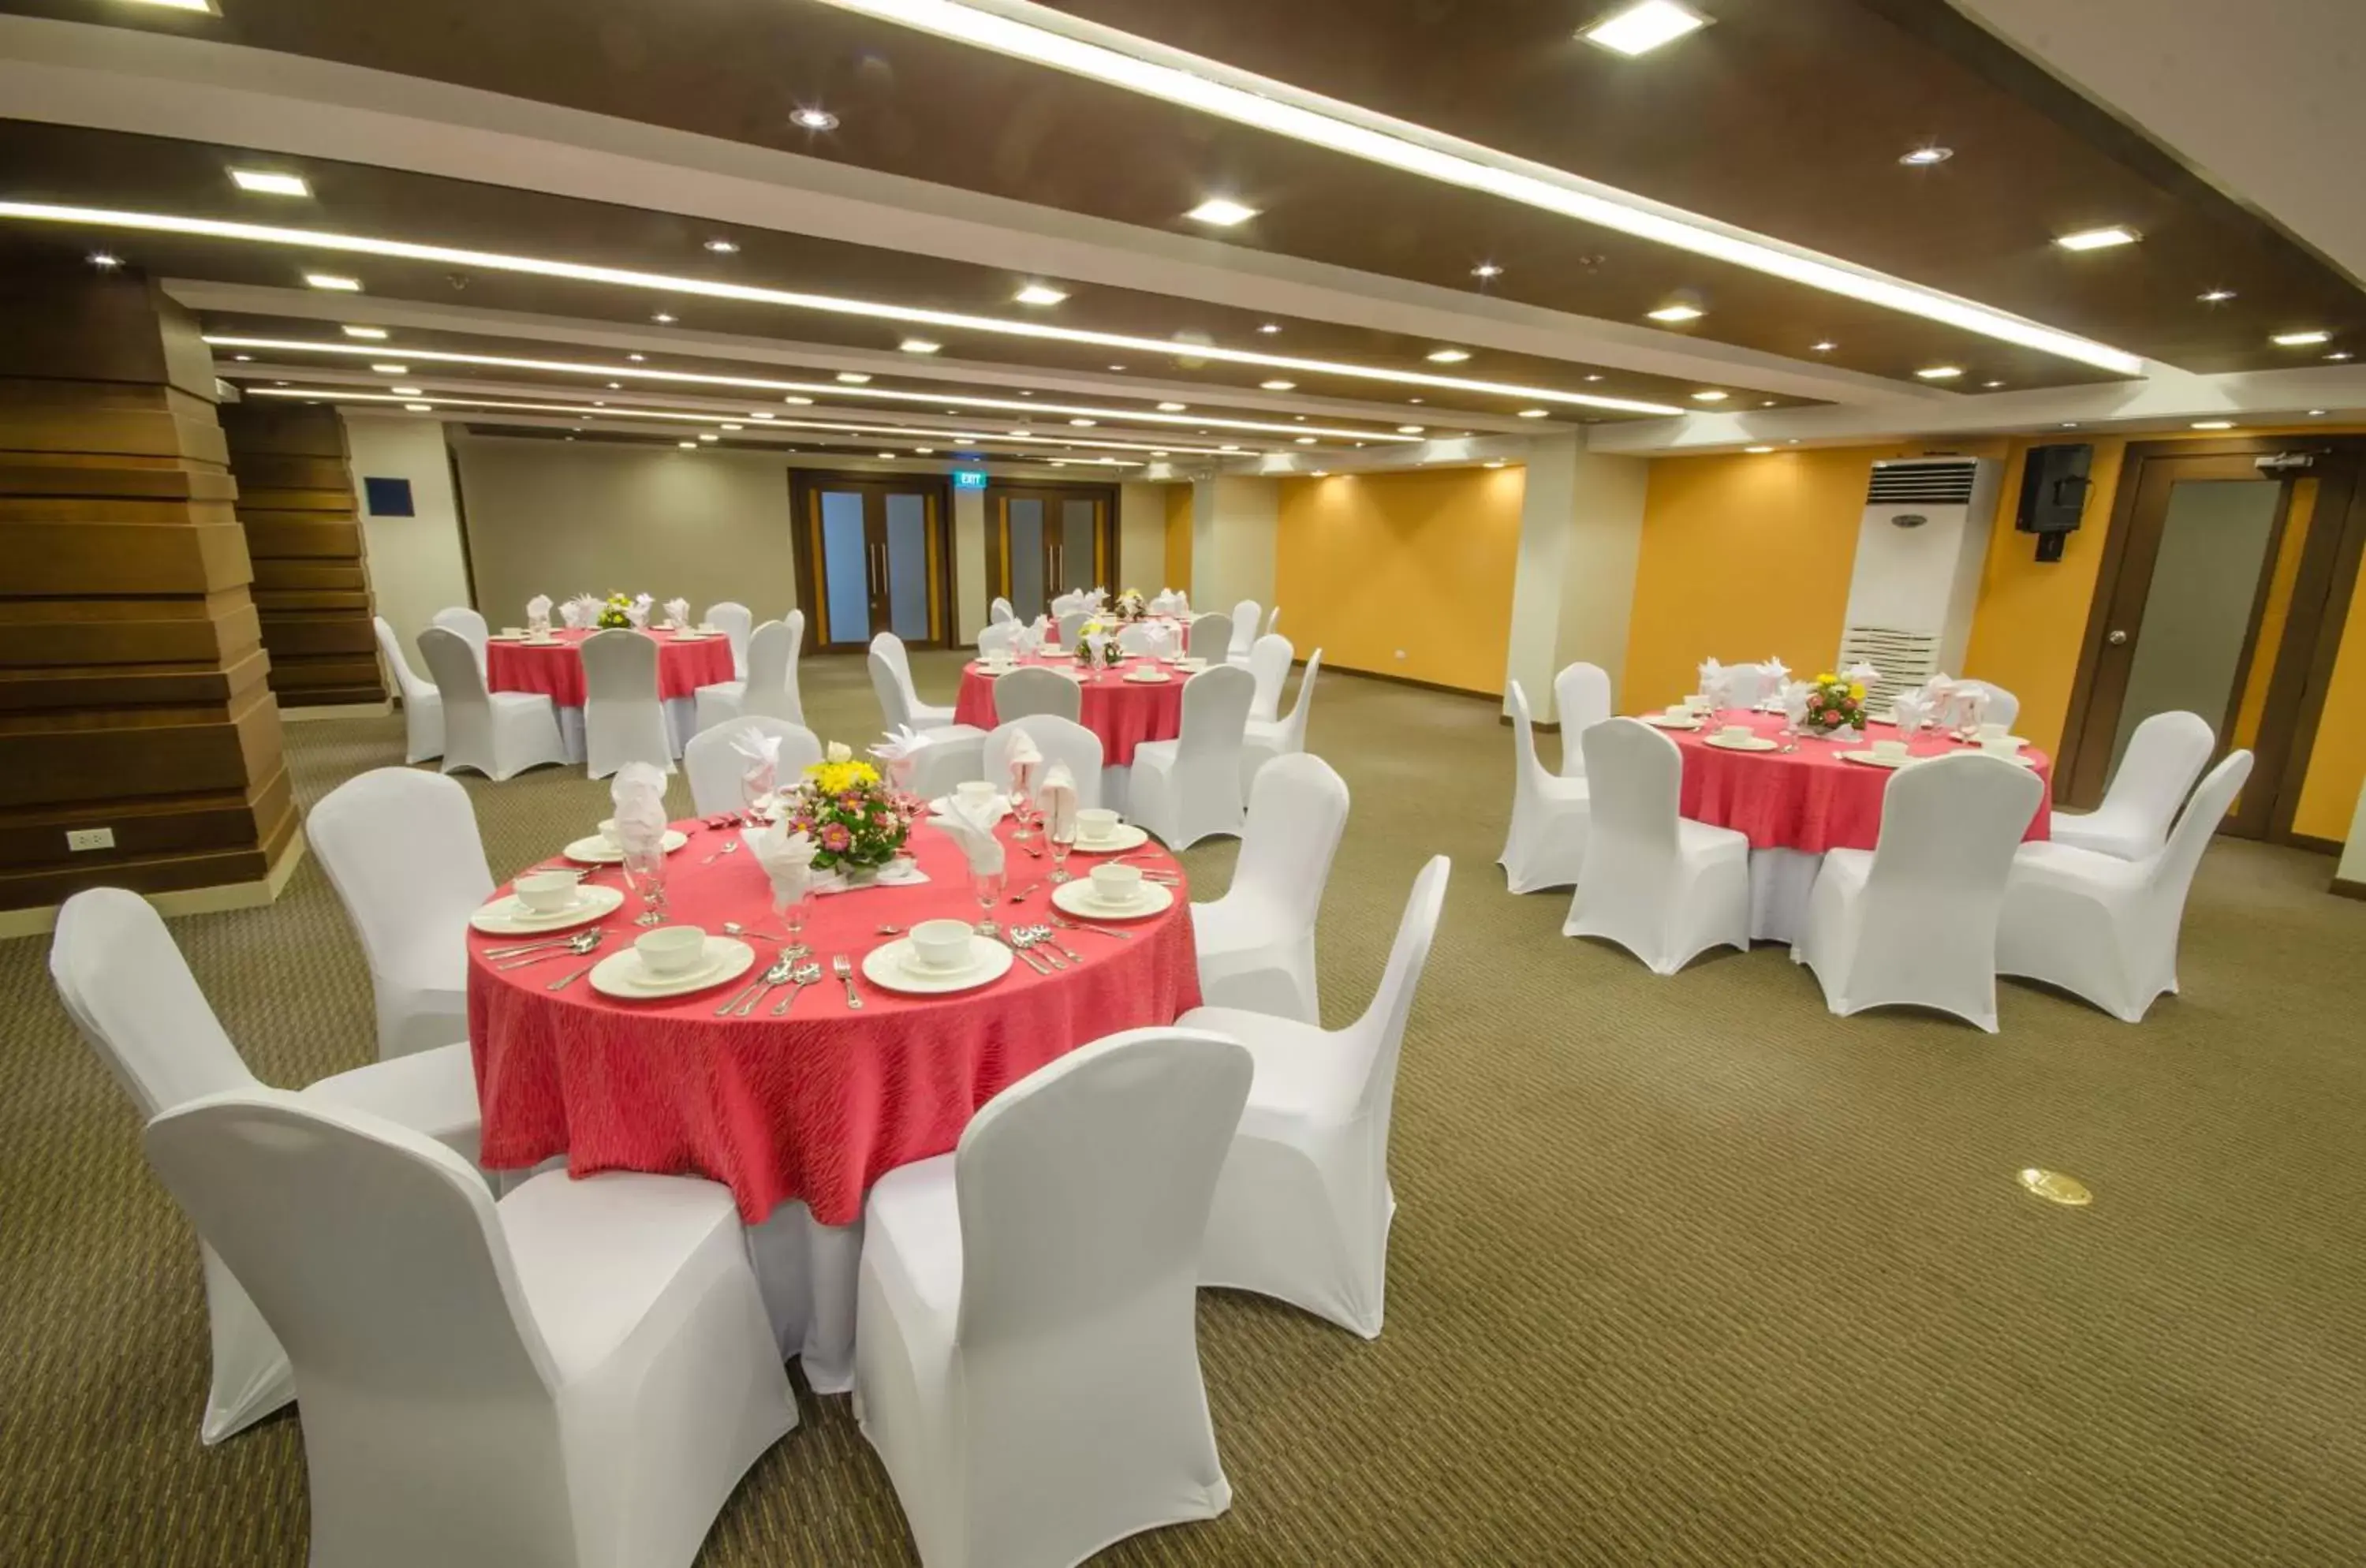 Banquet/Function facilities, Banquet Facilities in Fersal Hotel - Puerto Princesa